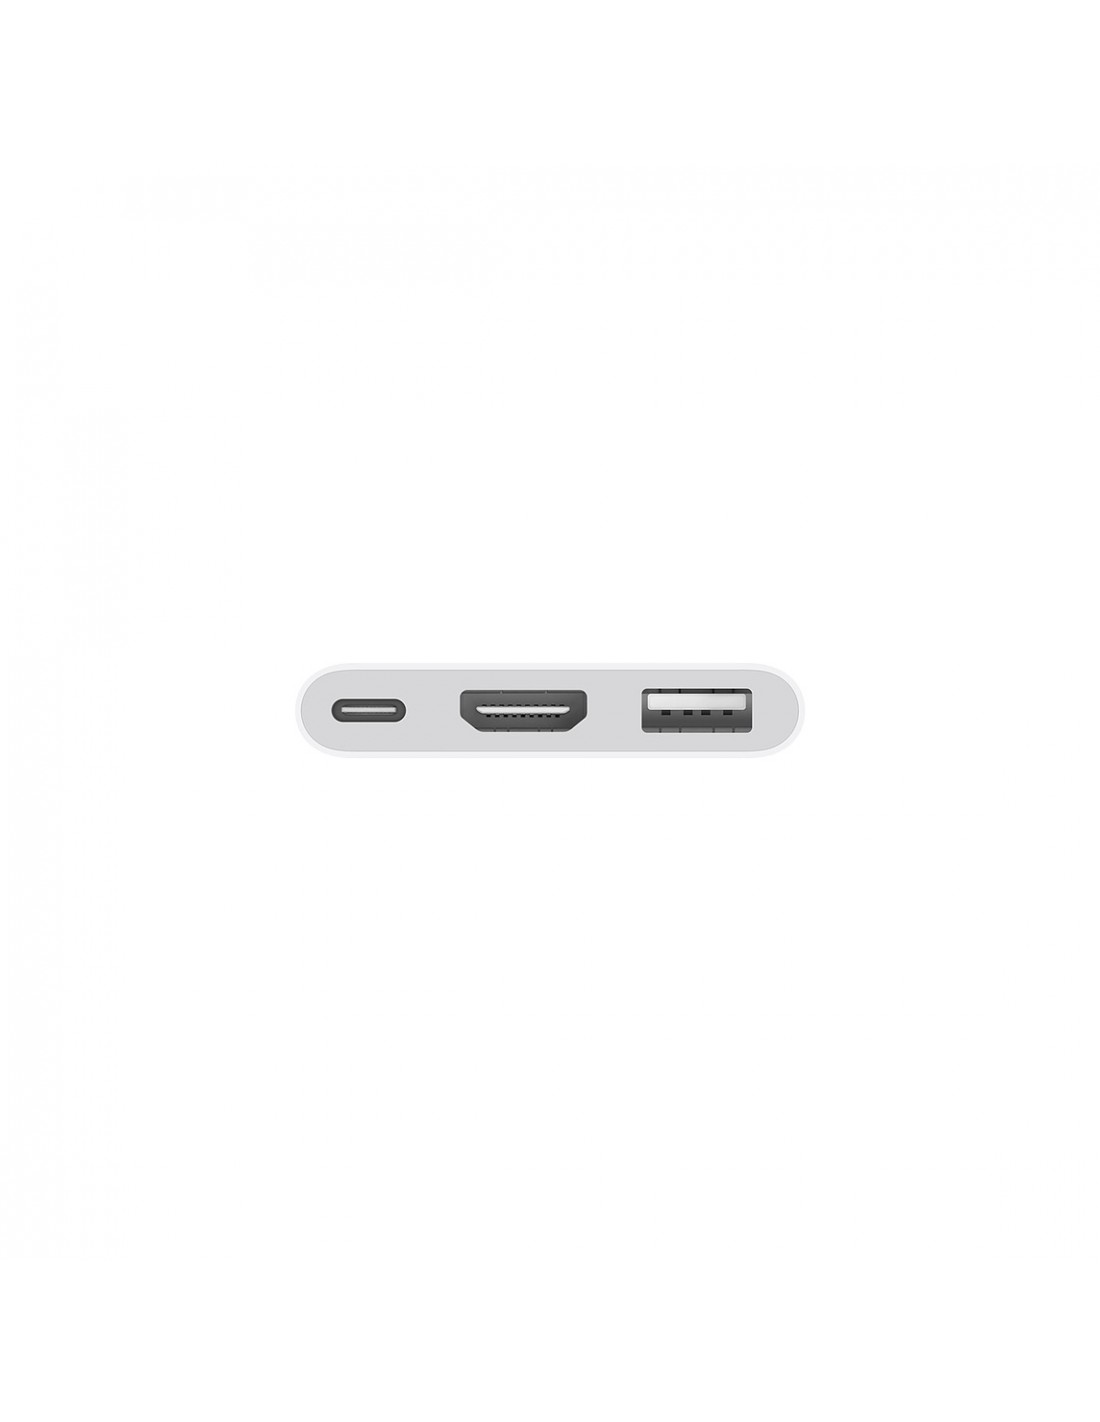 Adaptateur Apple USB-C Digital AV Multiport (HDMI, USB-C, USB-A)